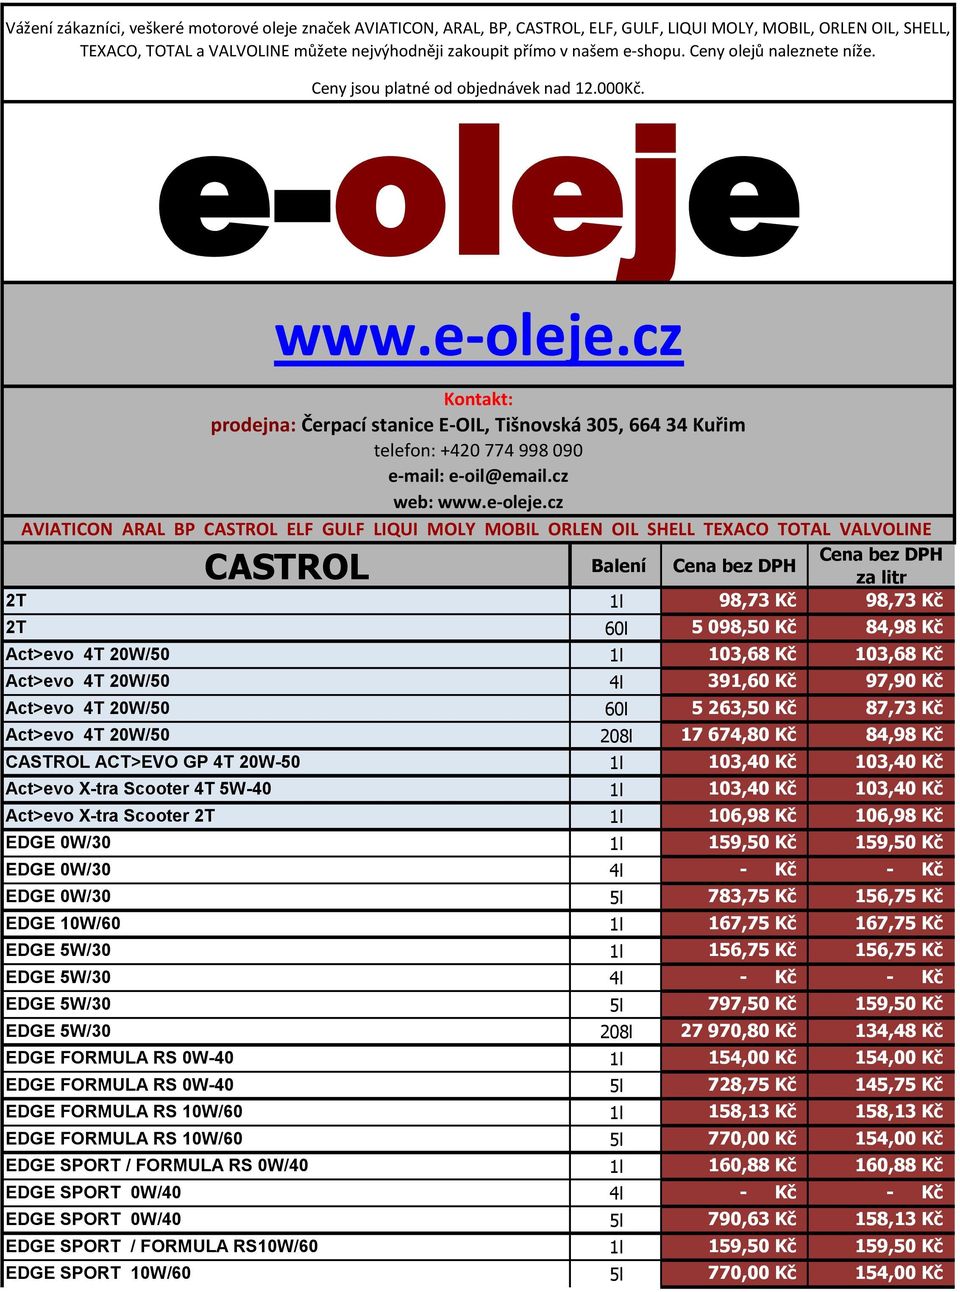 www.e-oleje.